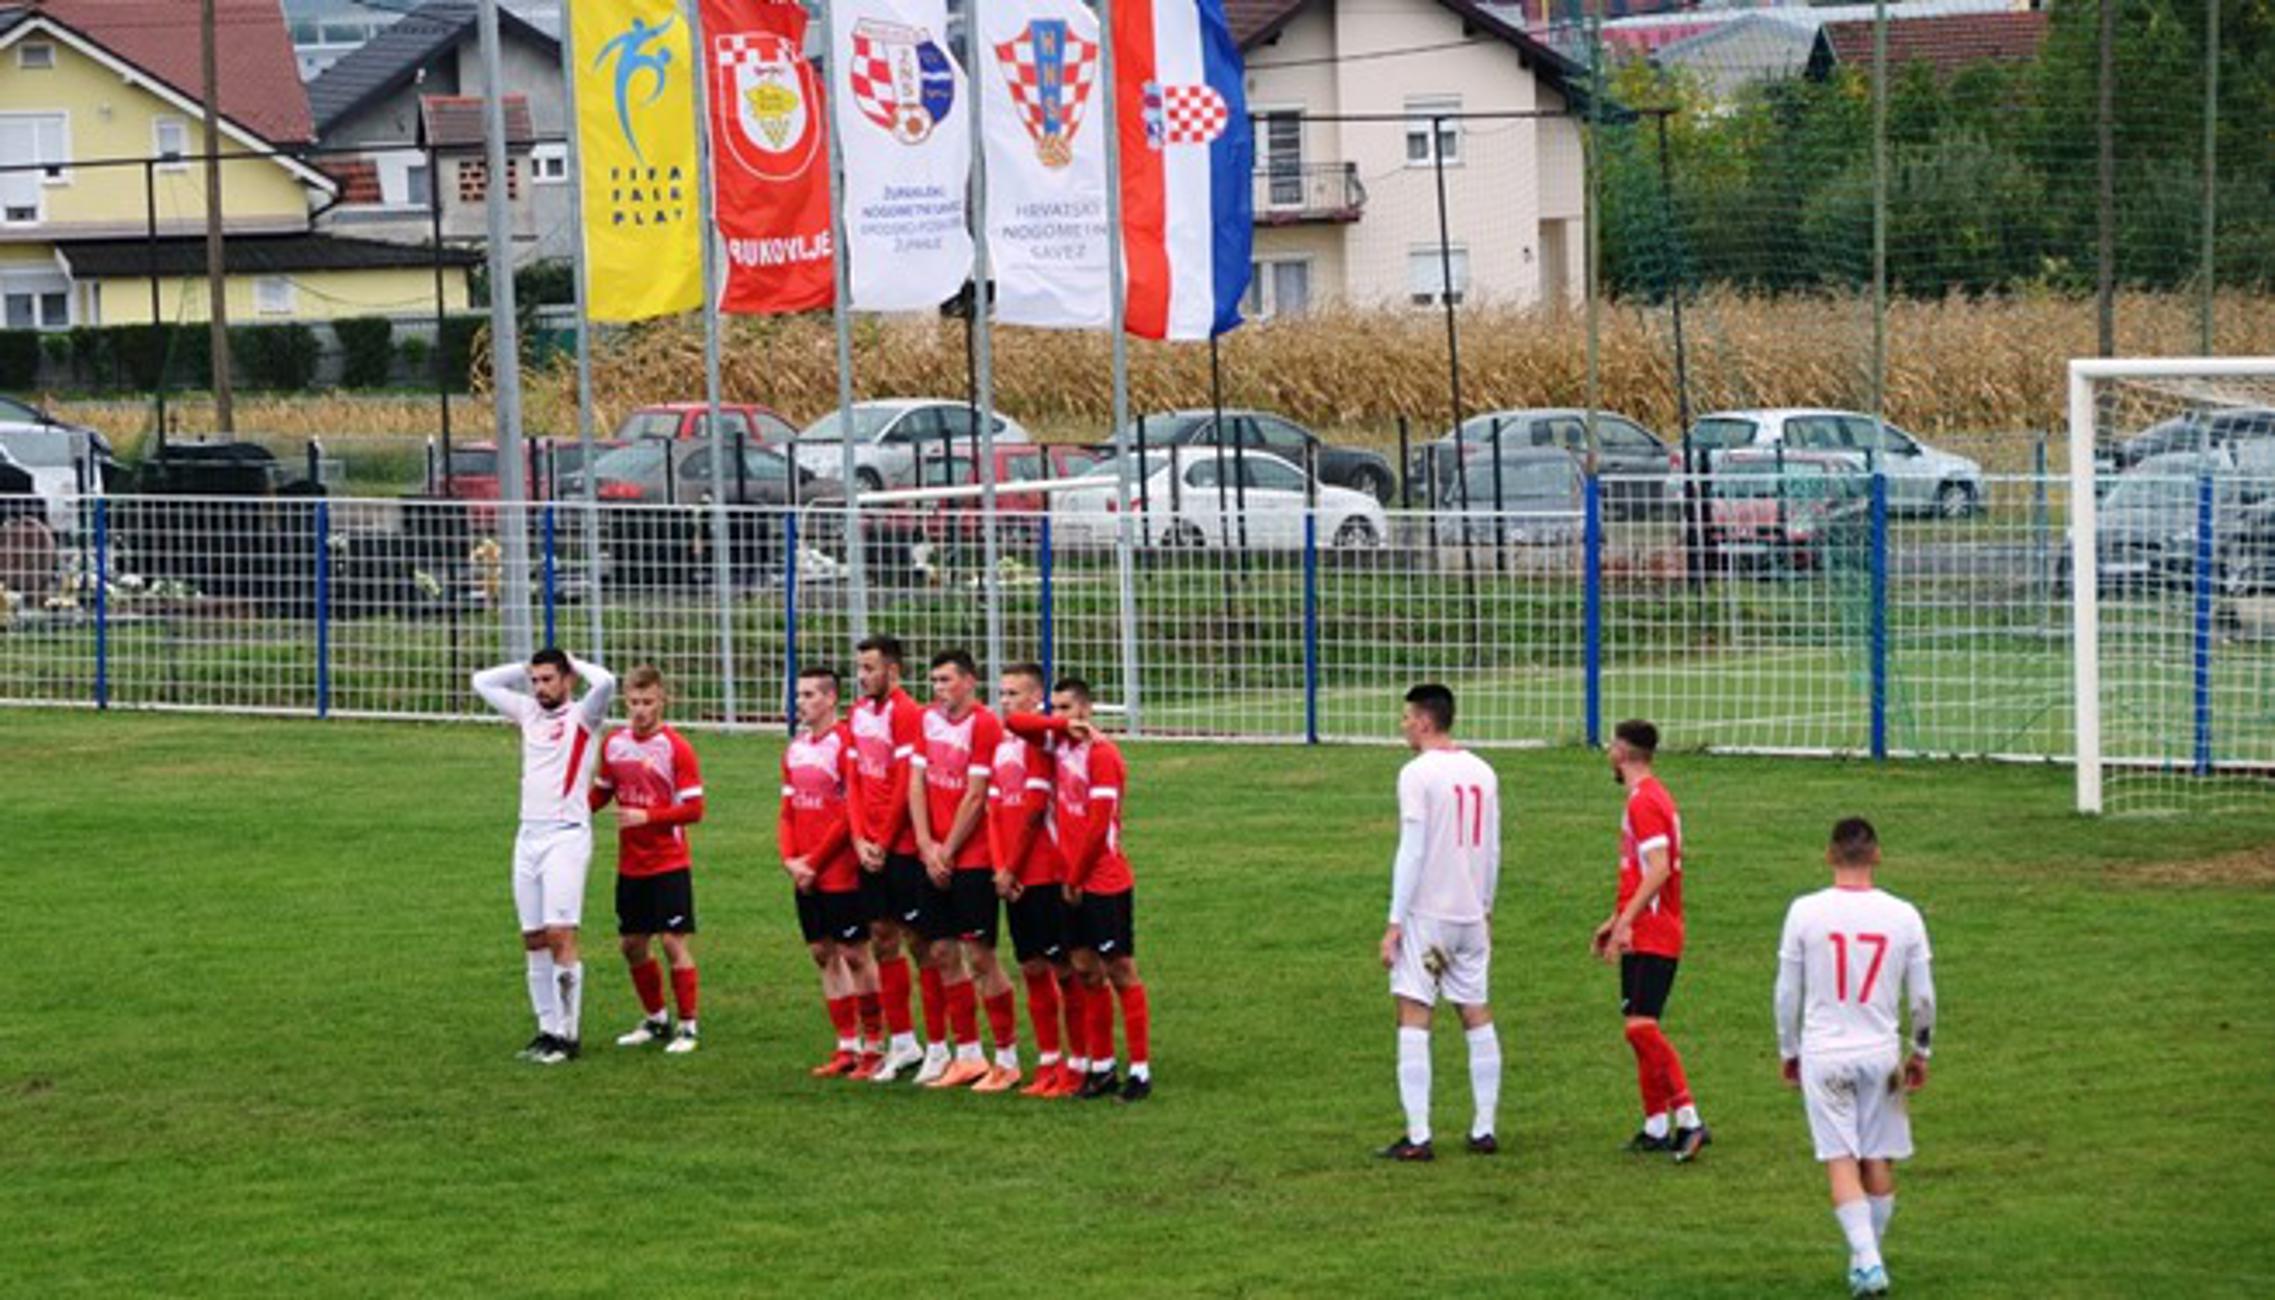 Slavonac (crveni) u Bukovlju dočekuje Slavoniju.